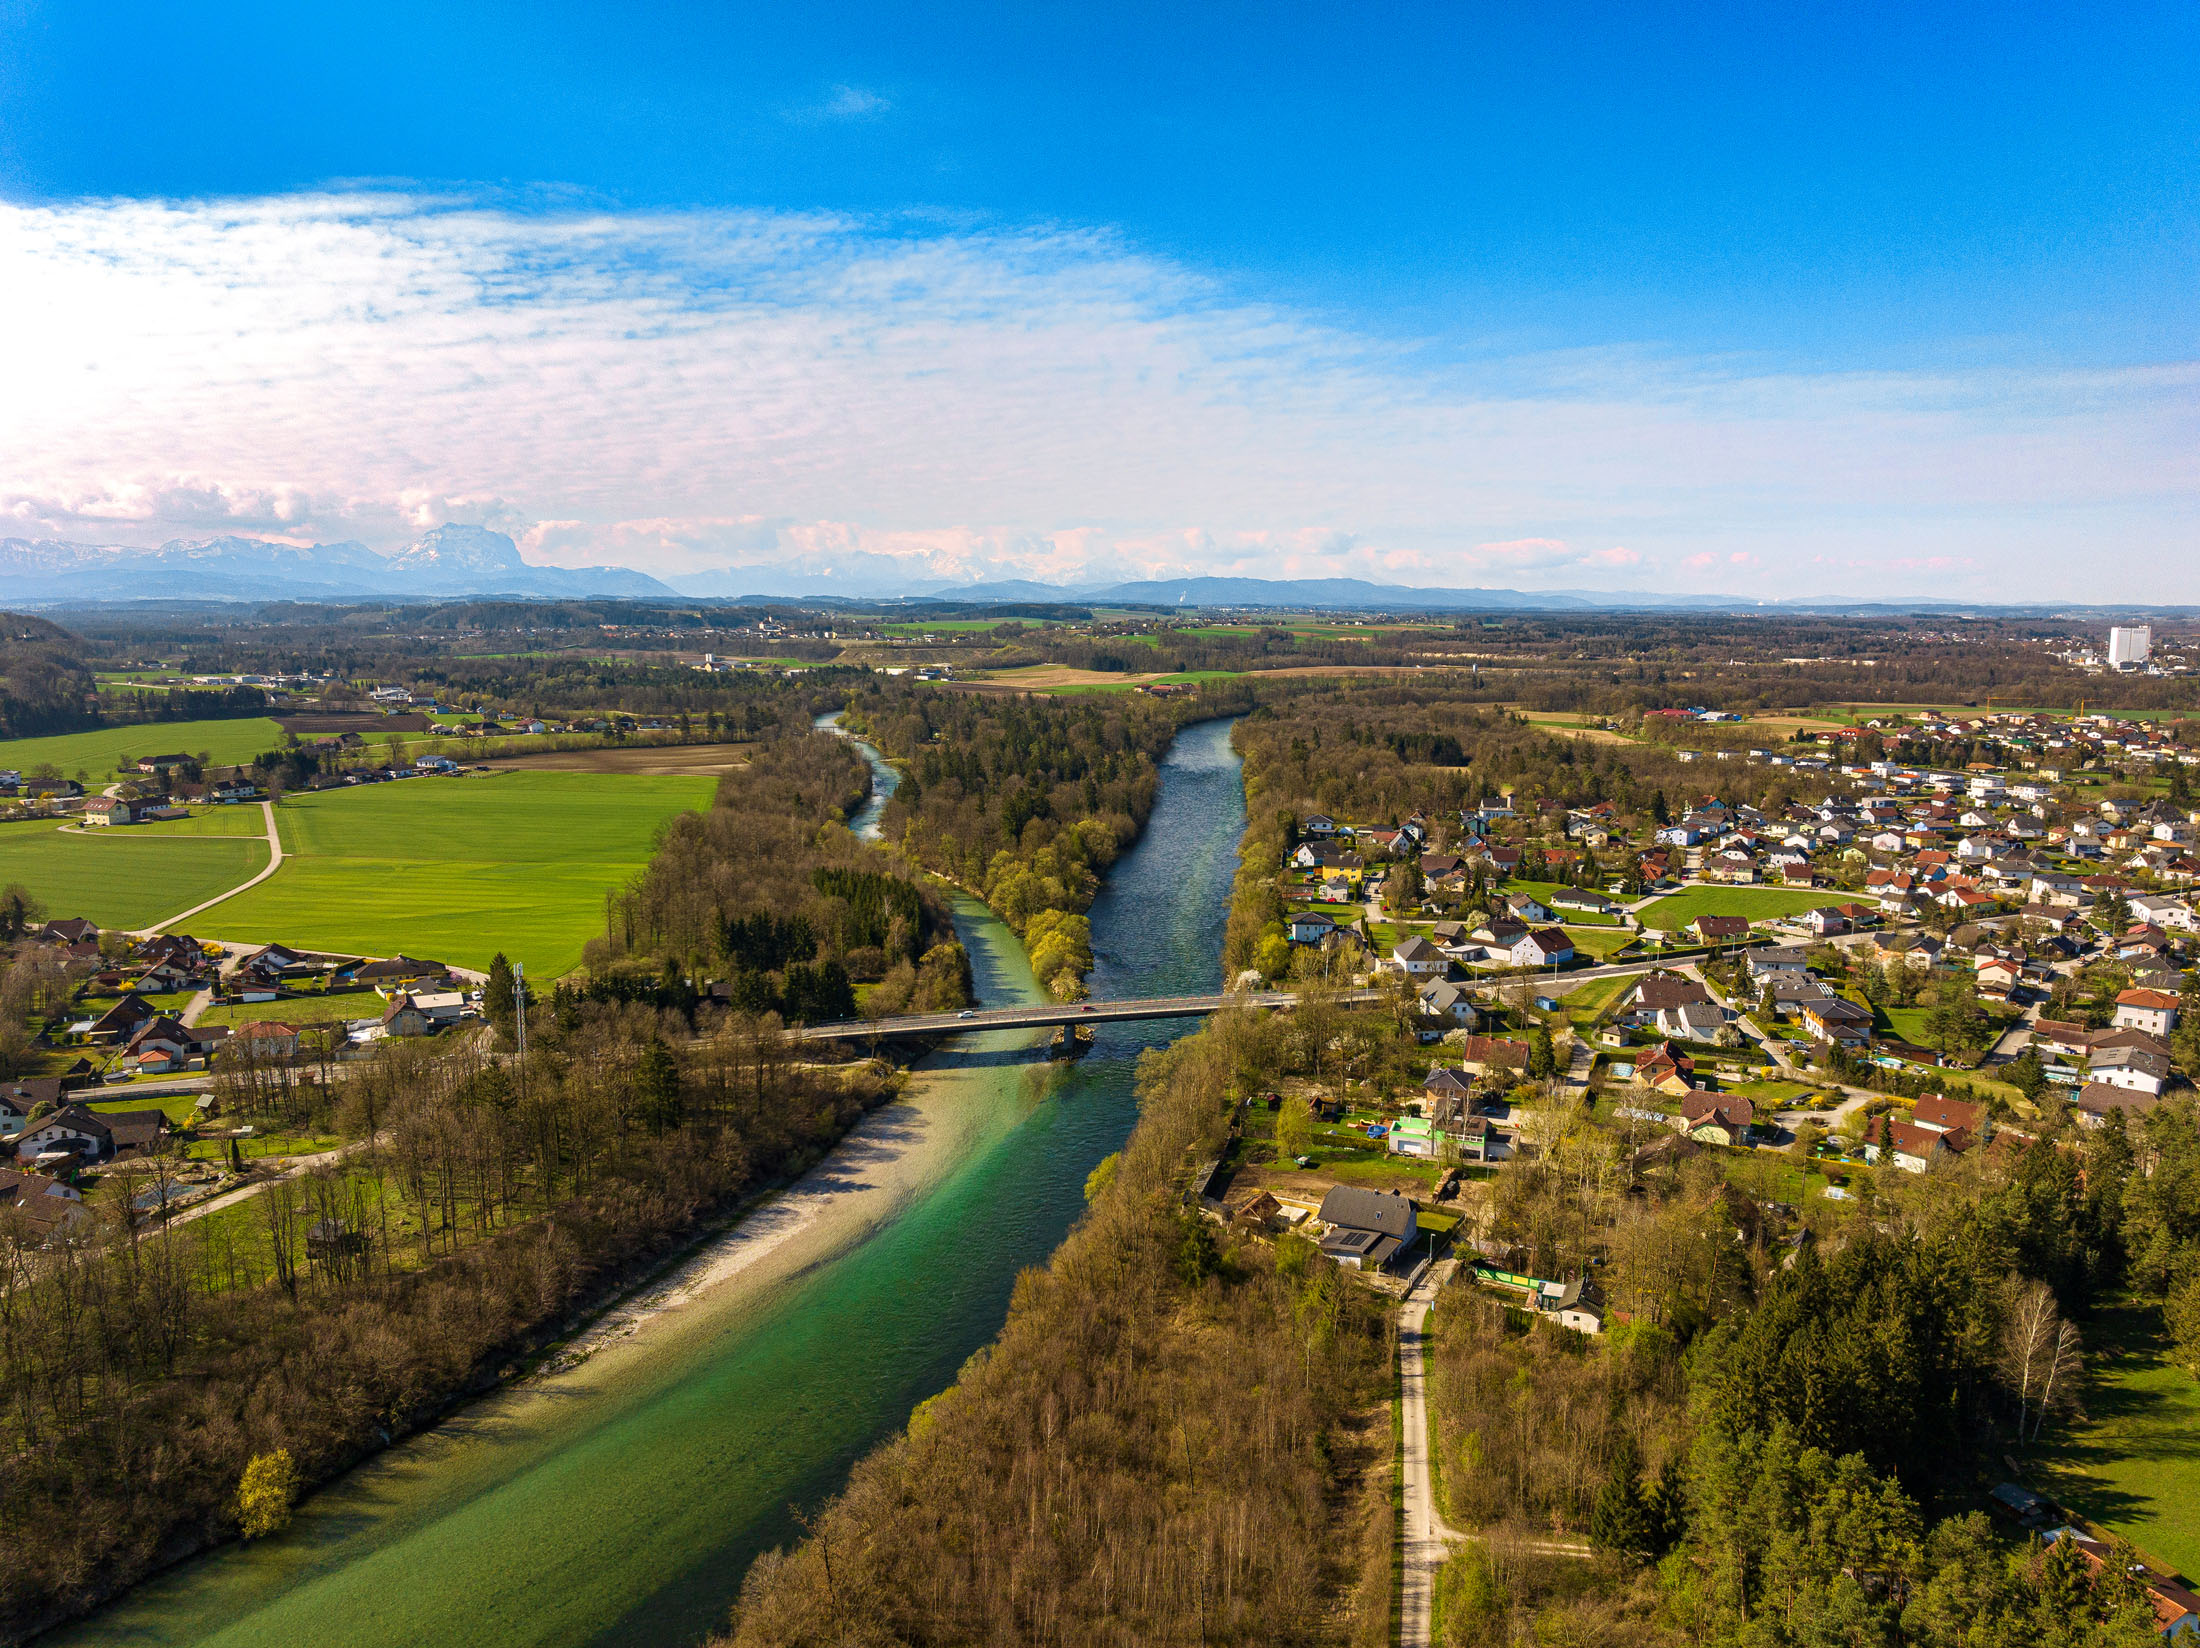 landschaftsplanung-kommunalfotografie-stimungsfoto-landschaftsfotografie-drohnenfotos-österreich-deutschland-schweiz